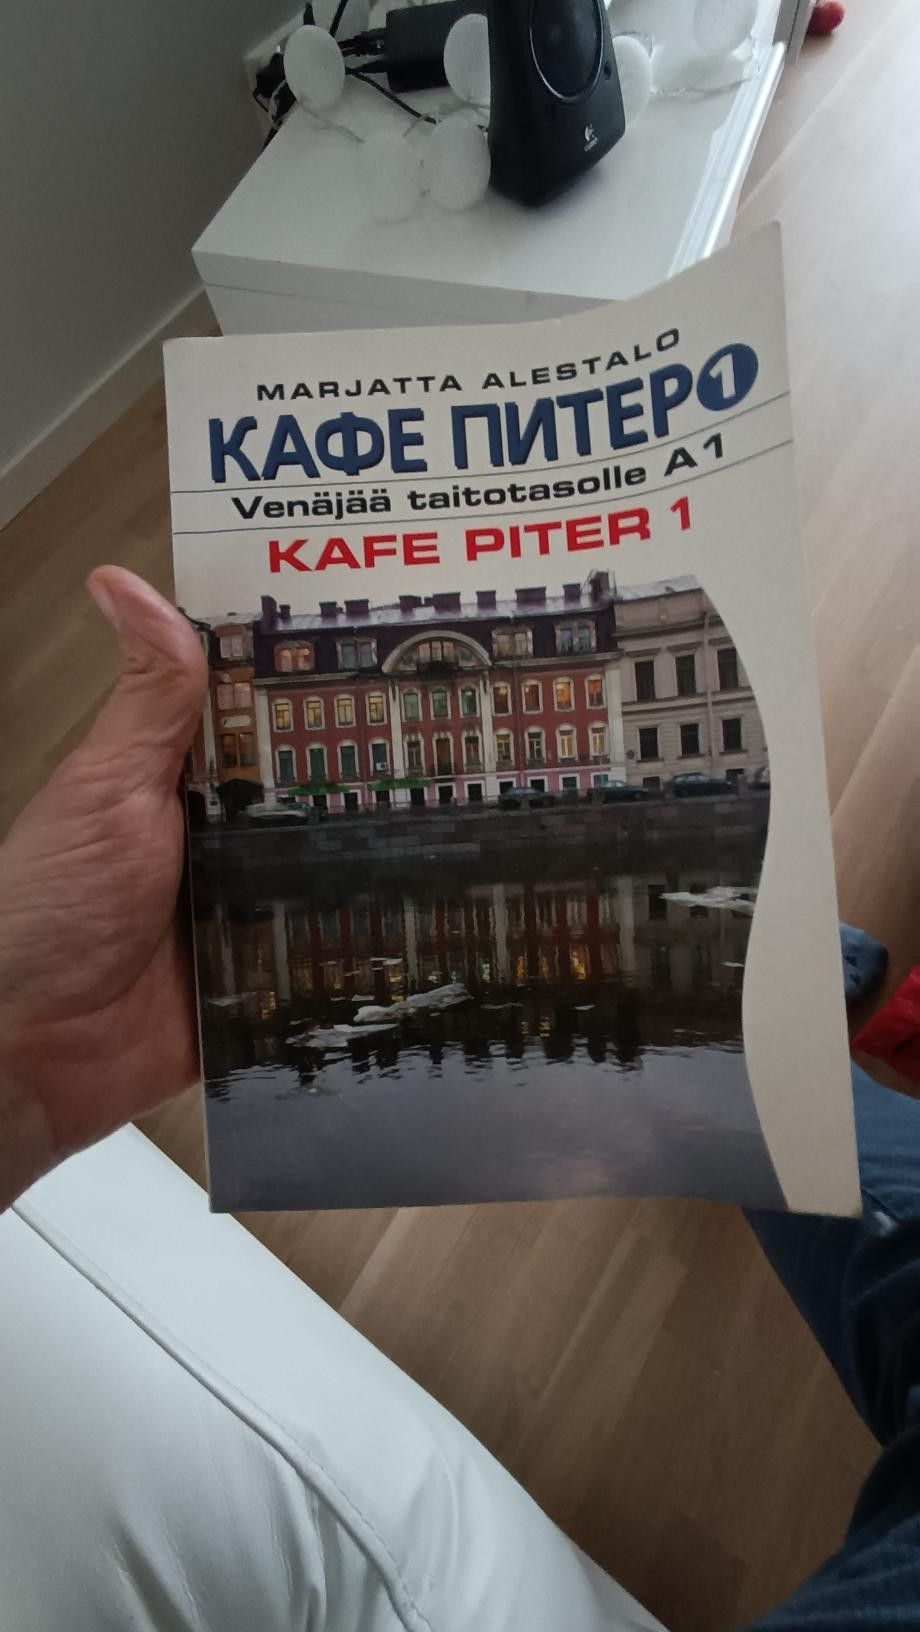 Venäjän oppikirja A1 - Kafe Piter